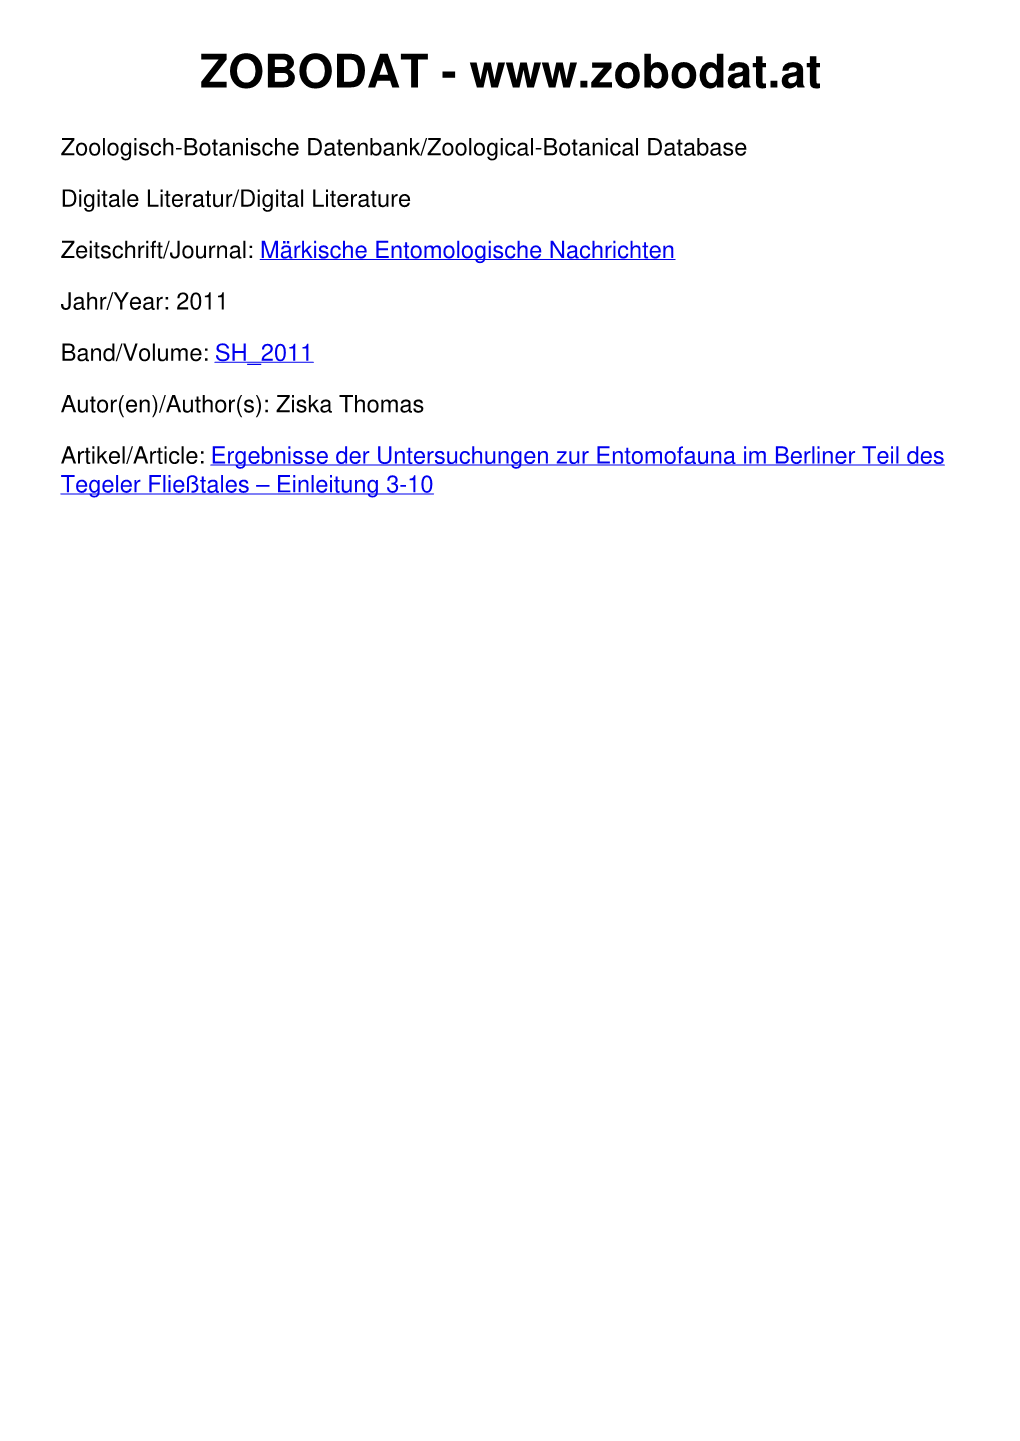 Ergebnisse Der Untersuchungen Zur Entomofauna Im Berliner Teil Des Tegeler Fließtales – Einleitung 3-10 Märkische Ent